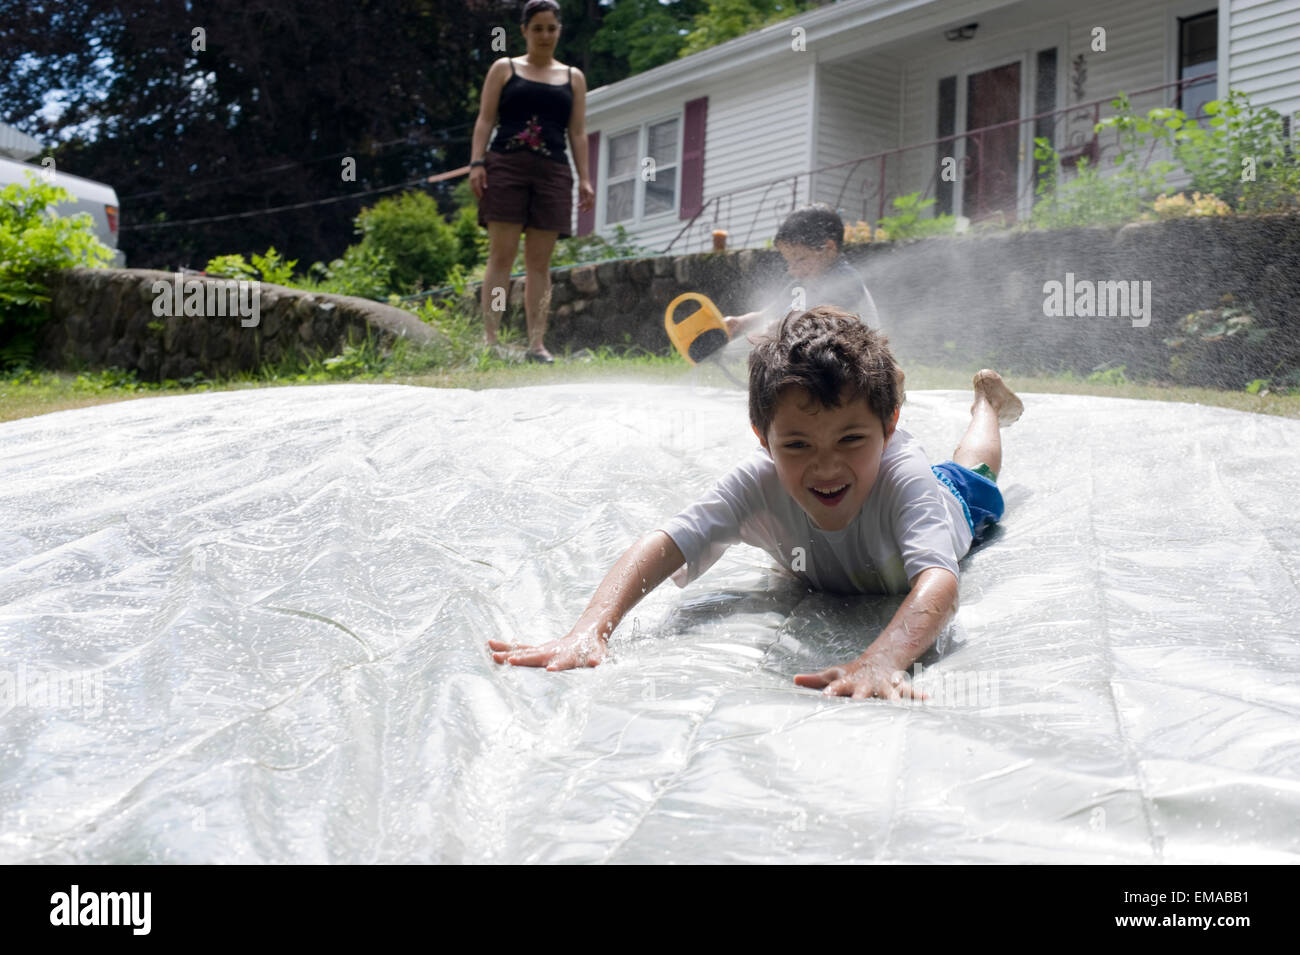 Los siete años de edad juega un deslizamiento caseras y deslizar en el patio de su casa con su madre y su hermano de 4 años Foto de stock